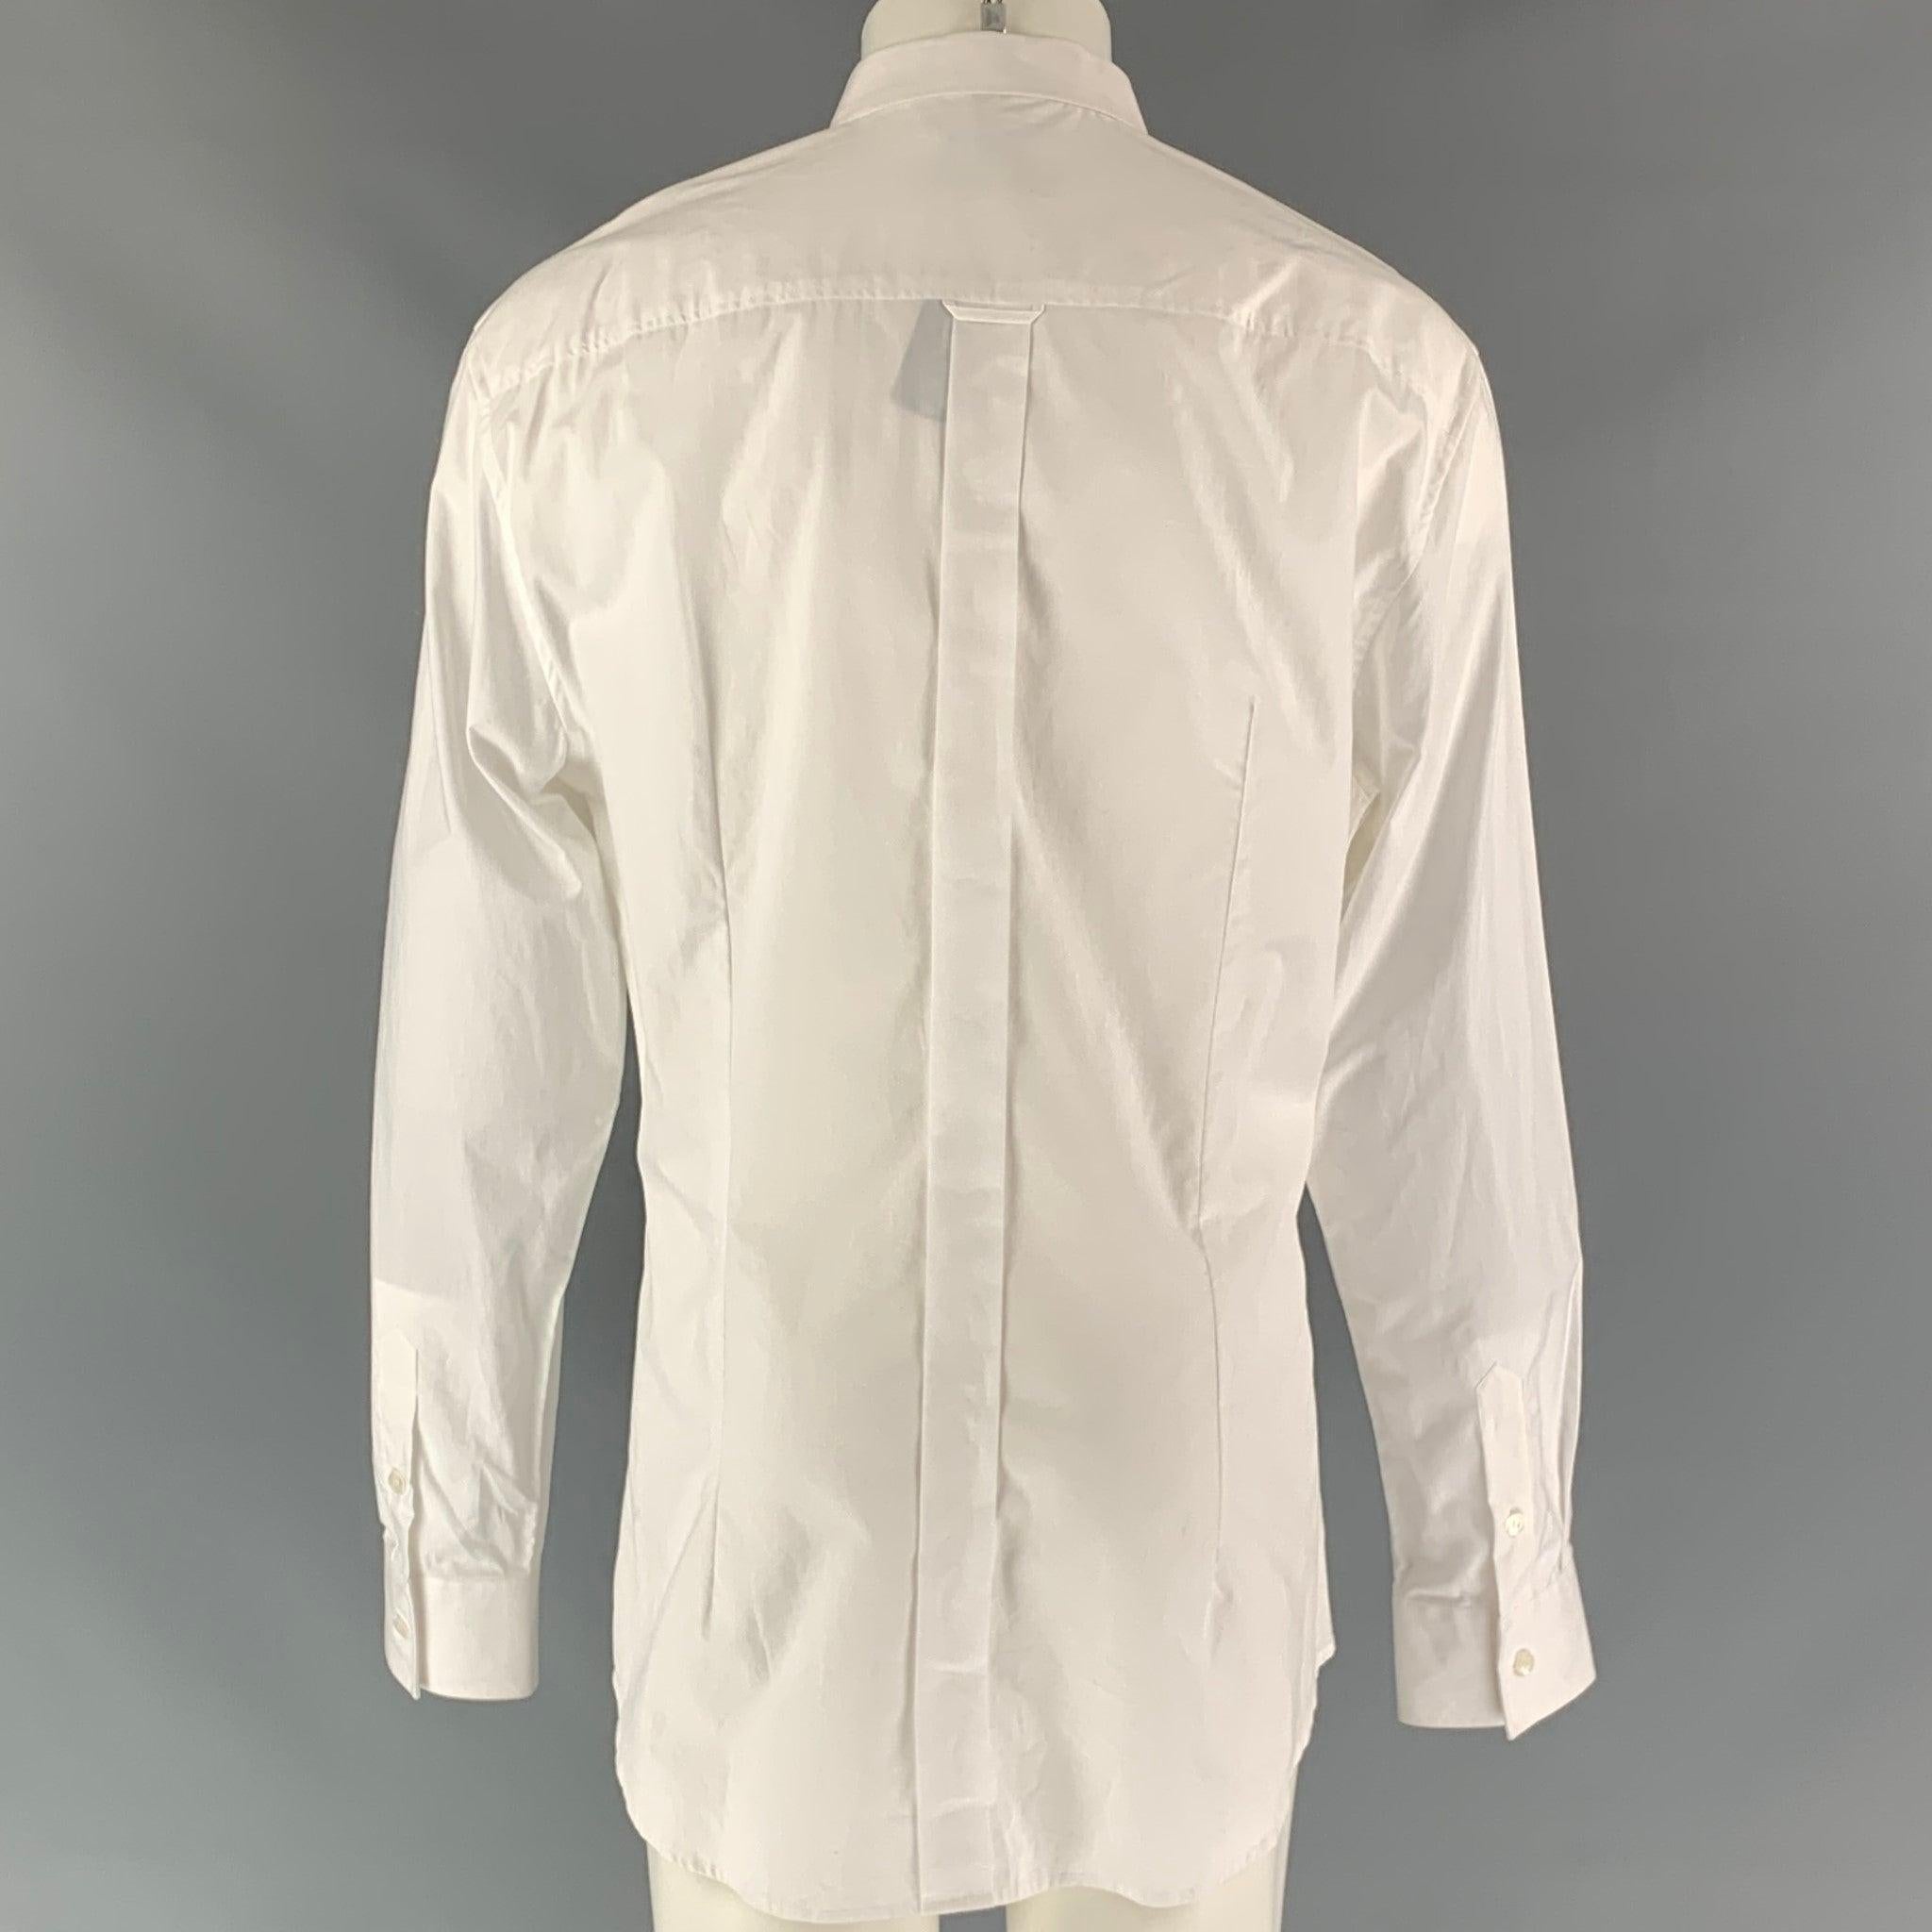 La chemise à manches longues D&G DOLCE & GABBANA est proposée en coton blanc. Elle se ferme par un bouton, présente un col droit et des poignets carrés à un bouton et comporte des poches plaquées.
Nouveau avec Tags. 

Marqué :   48
 

Mesures : 
 